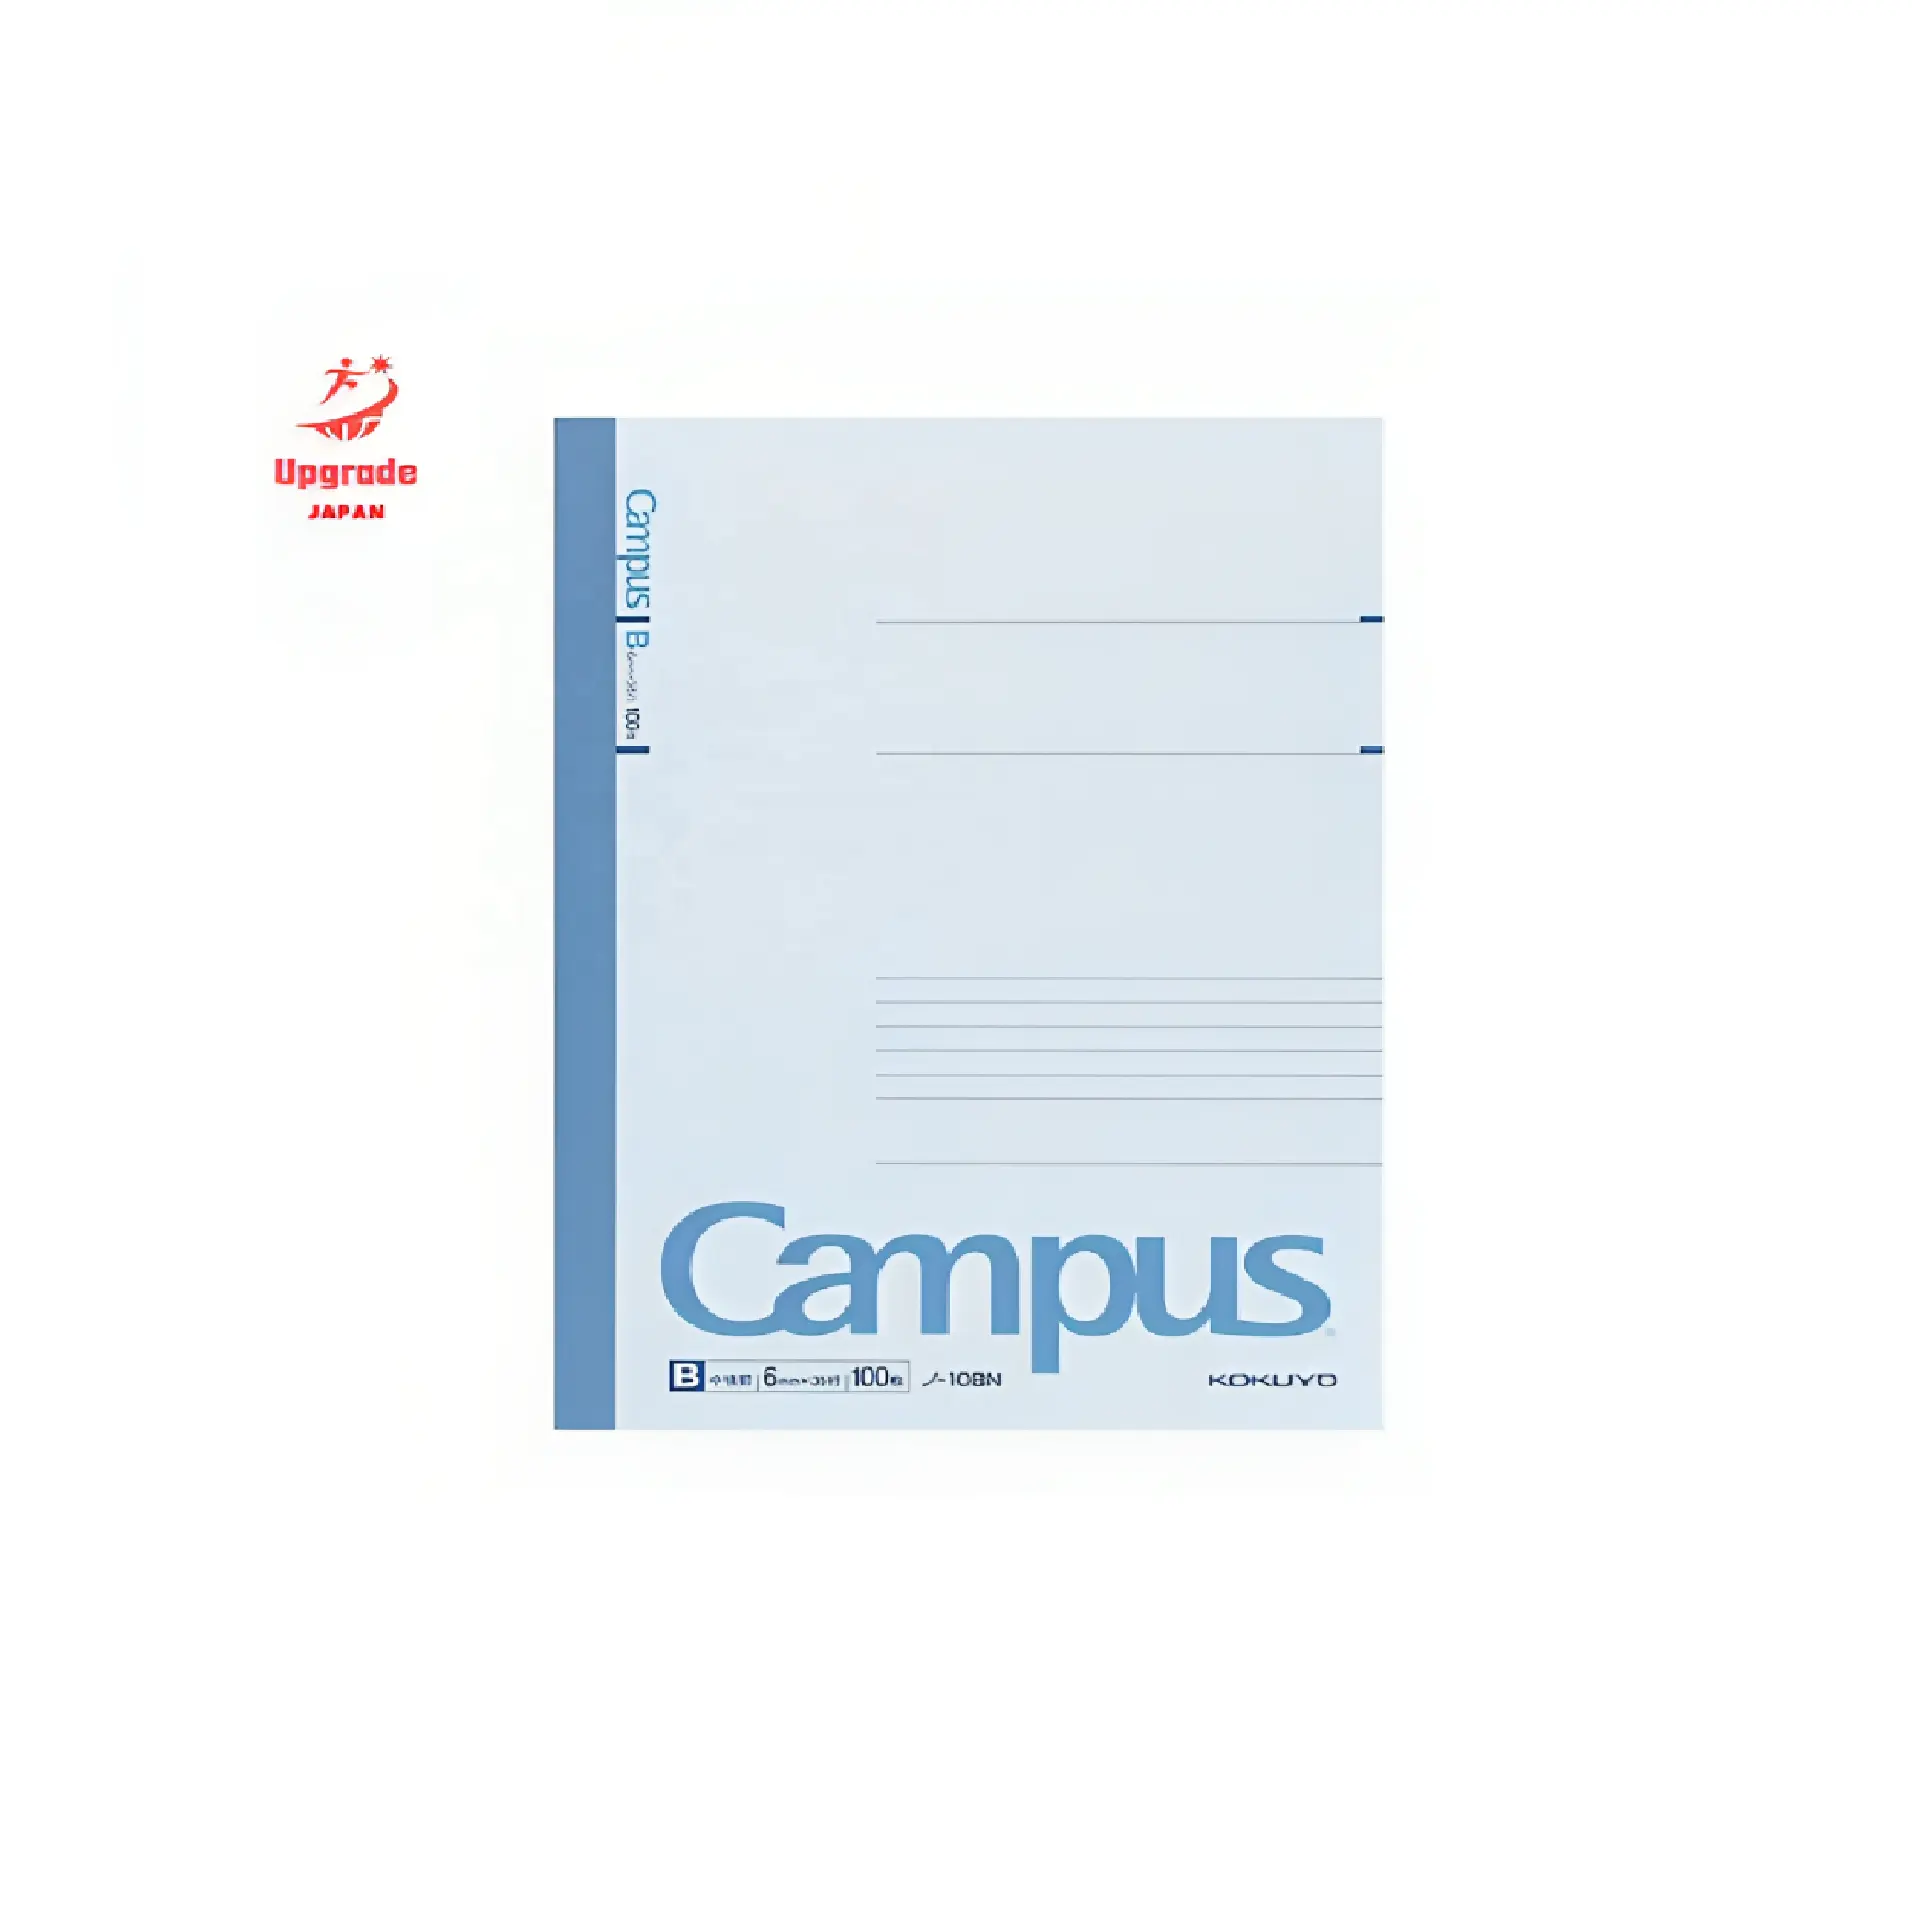 하이 퀄리티 학생 쓰기 페이지 일본어 문구 도매 프리미엄 노트북